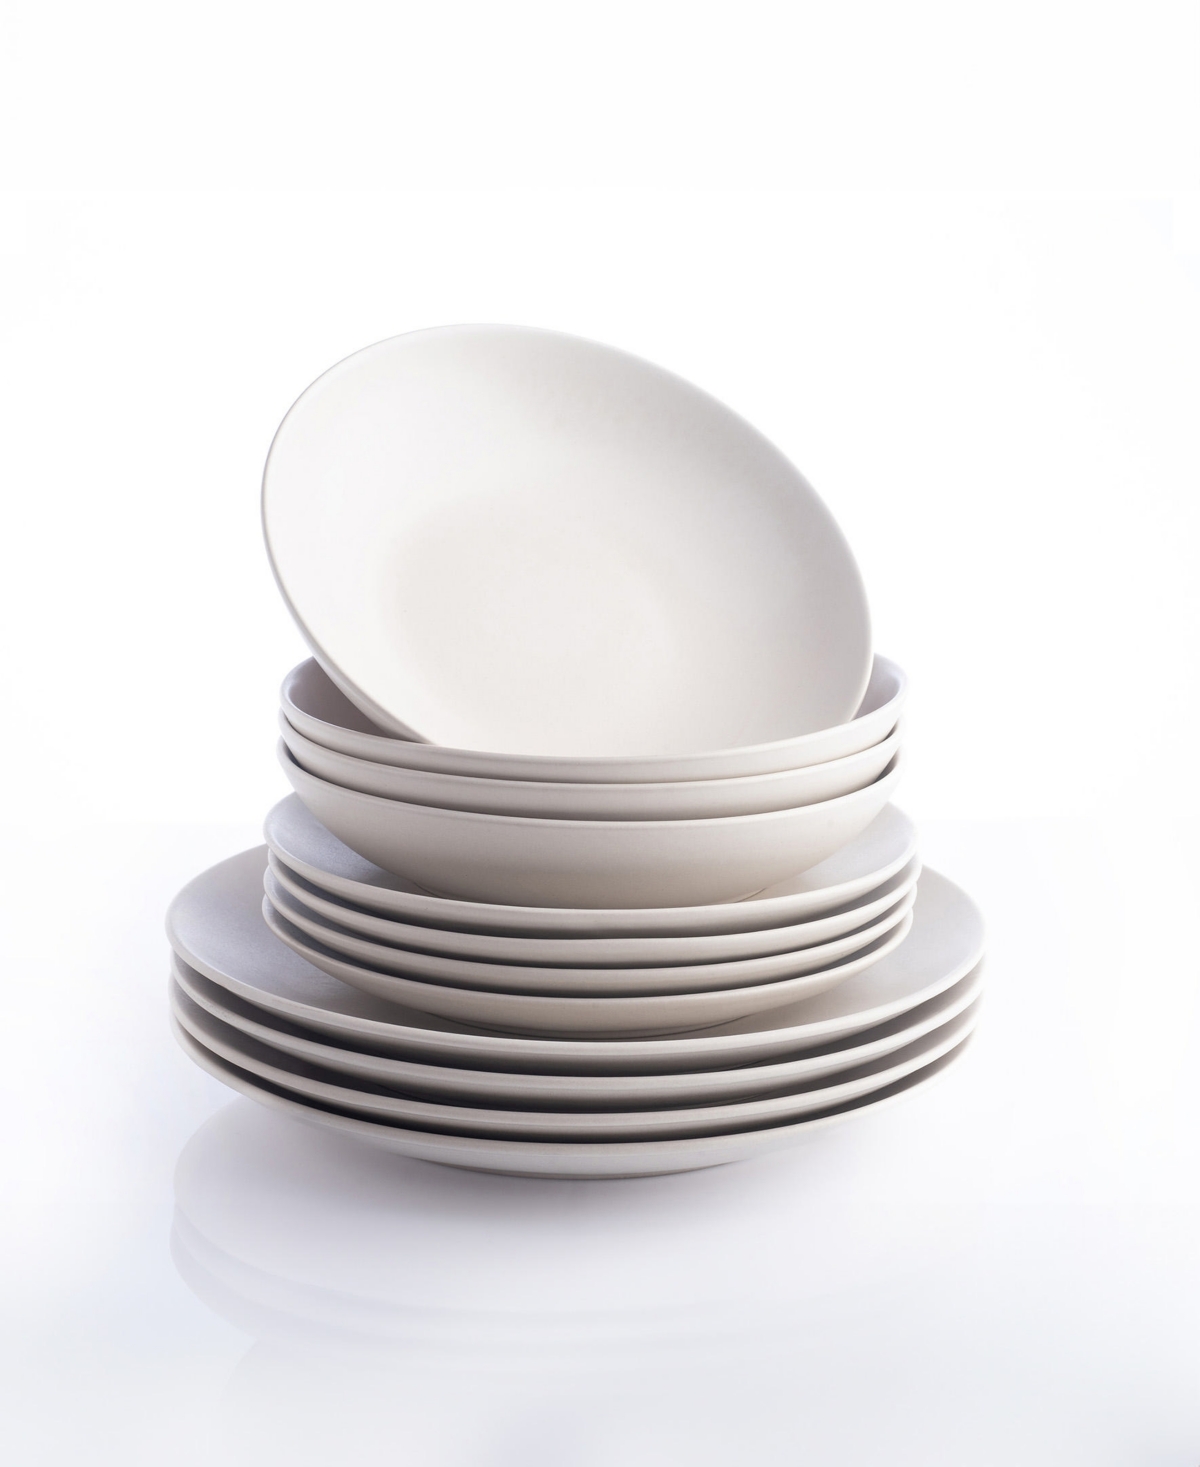 Porto by Stone Lain Semplice Stoneware Full Dinnerware Set, 12 Pcs, Service for 4 - White Matte